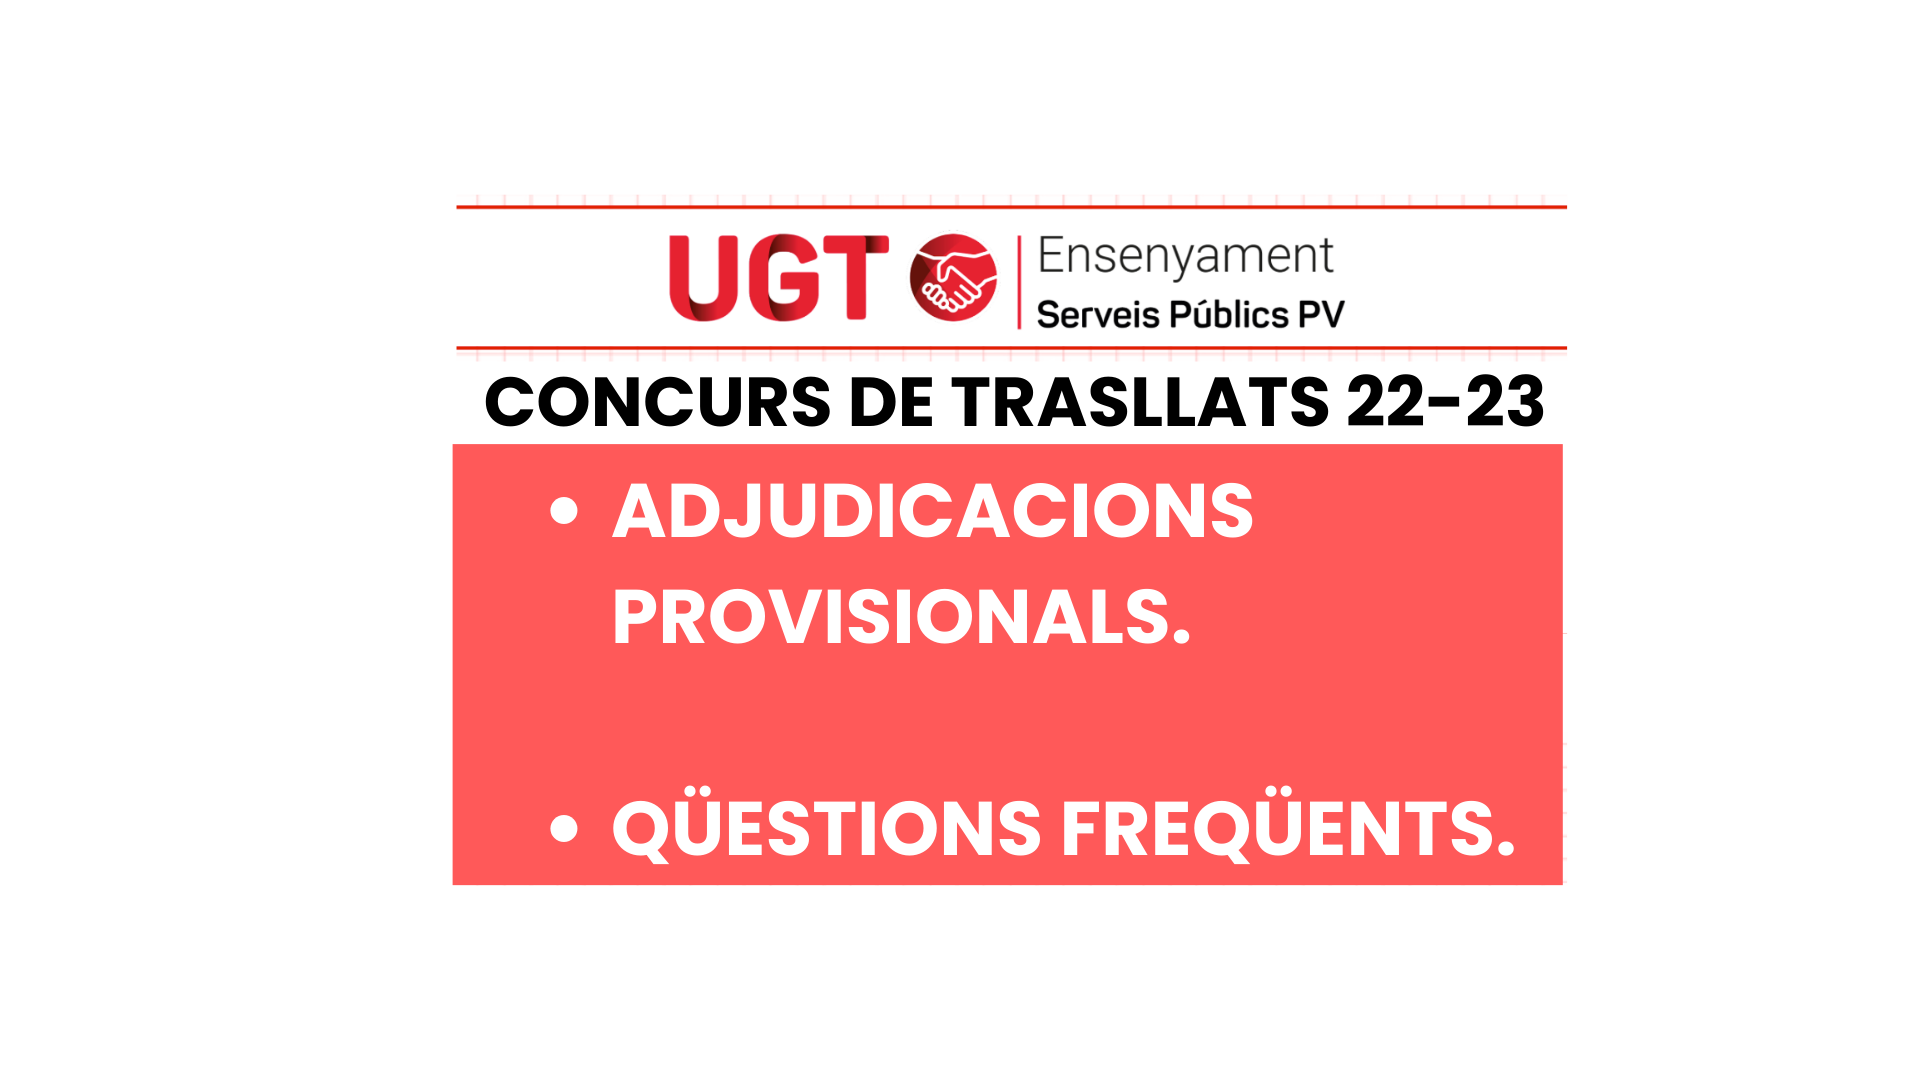 UGT INFORMA. Concurs 2022/2023. Adjudicació provisional i qüestions freqüents.